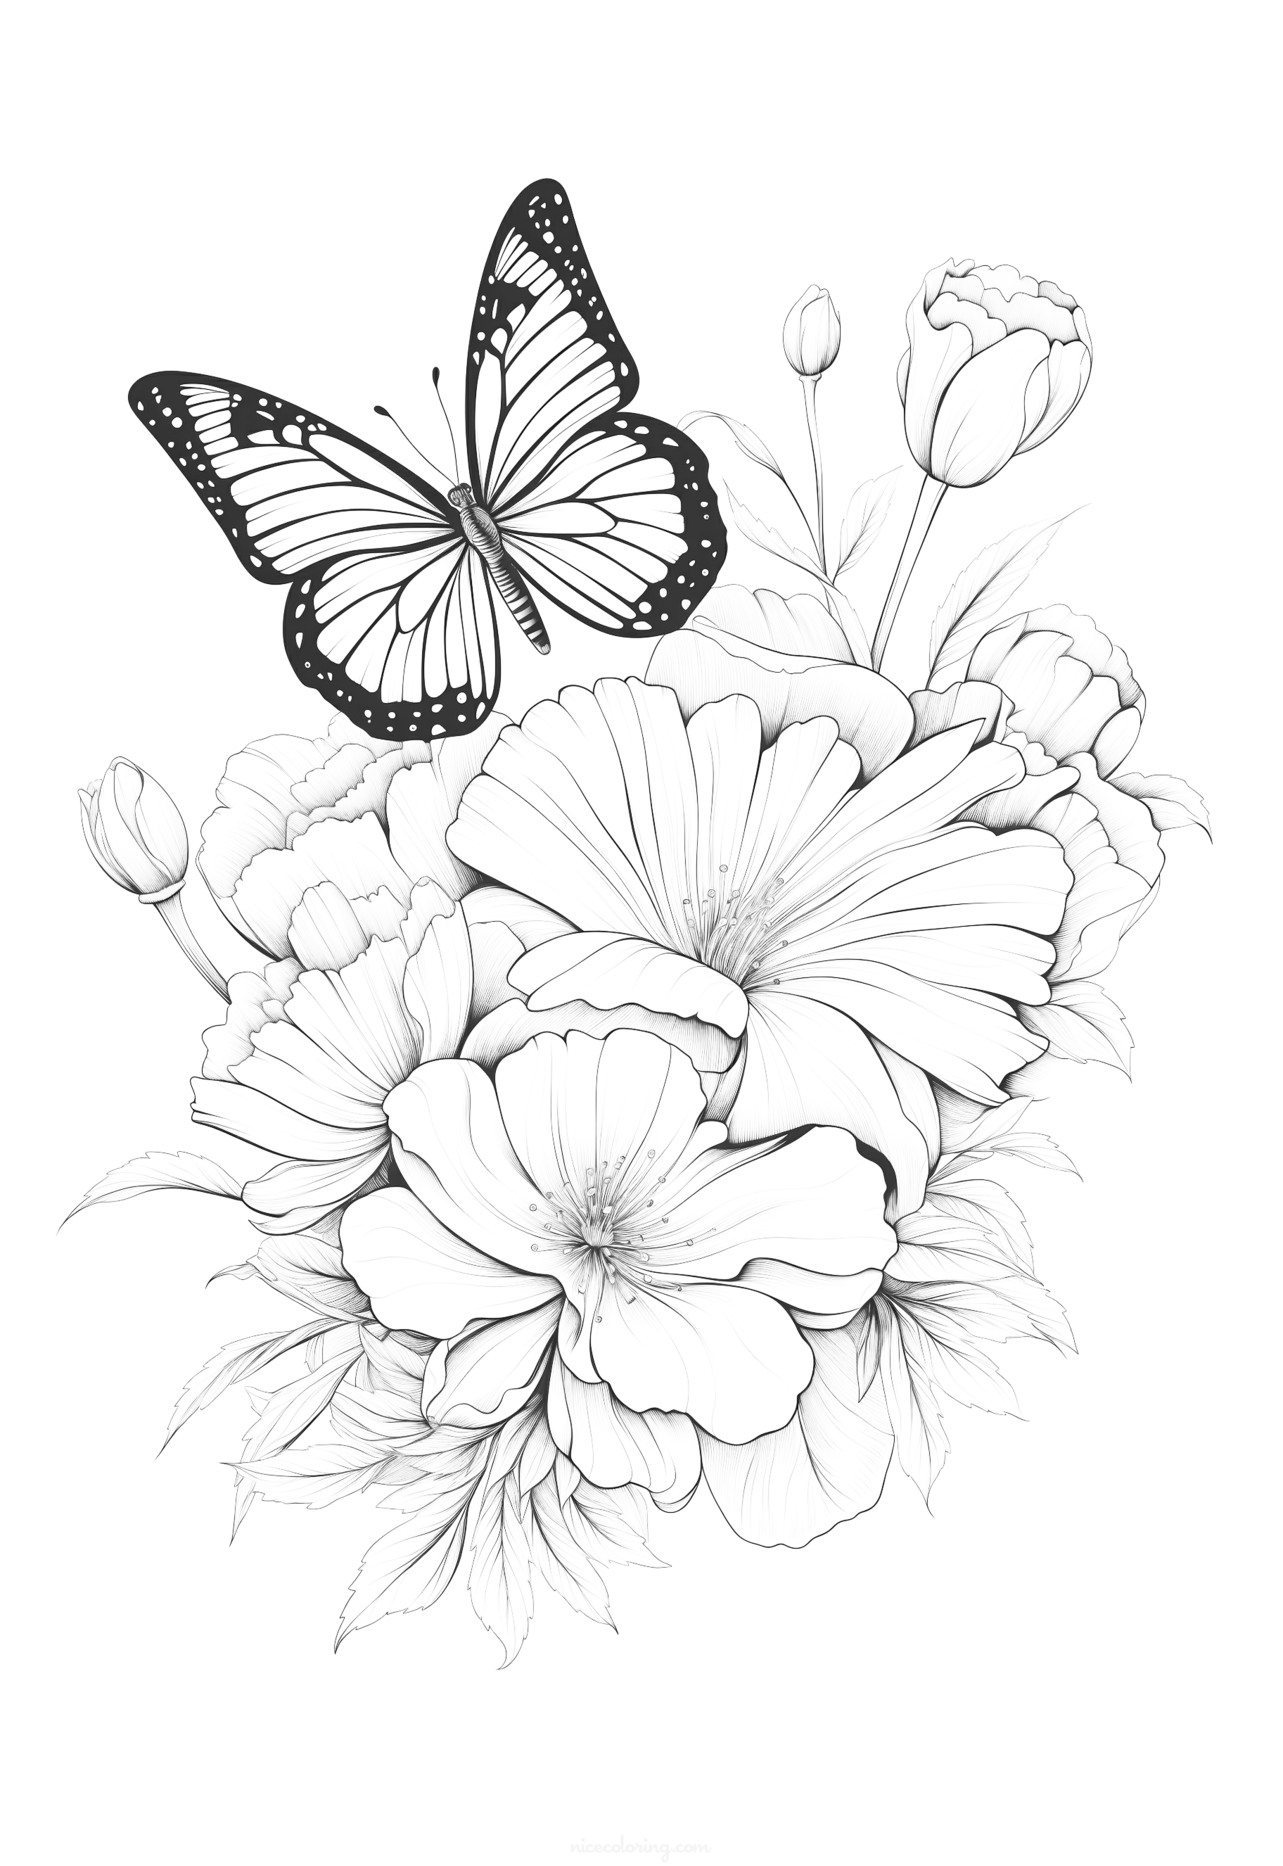 Gambar taman kupu-kupu untuk diwarnai